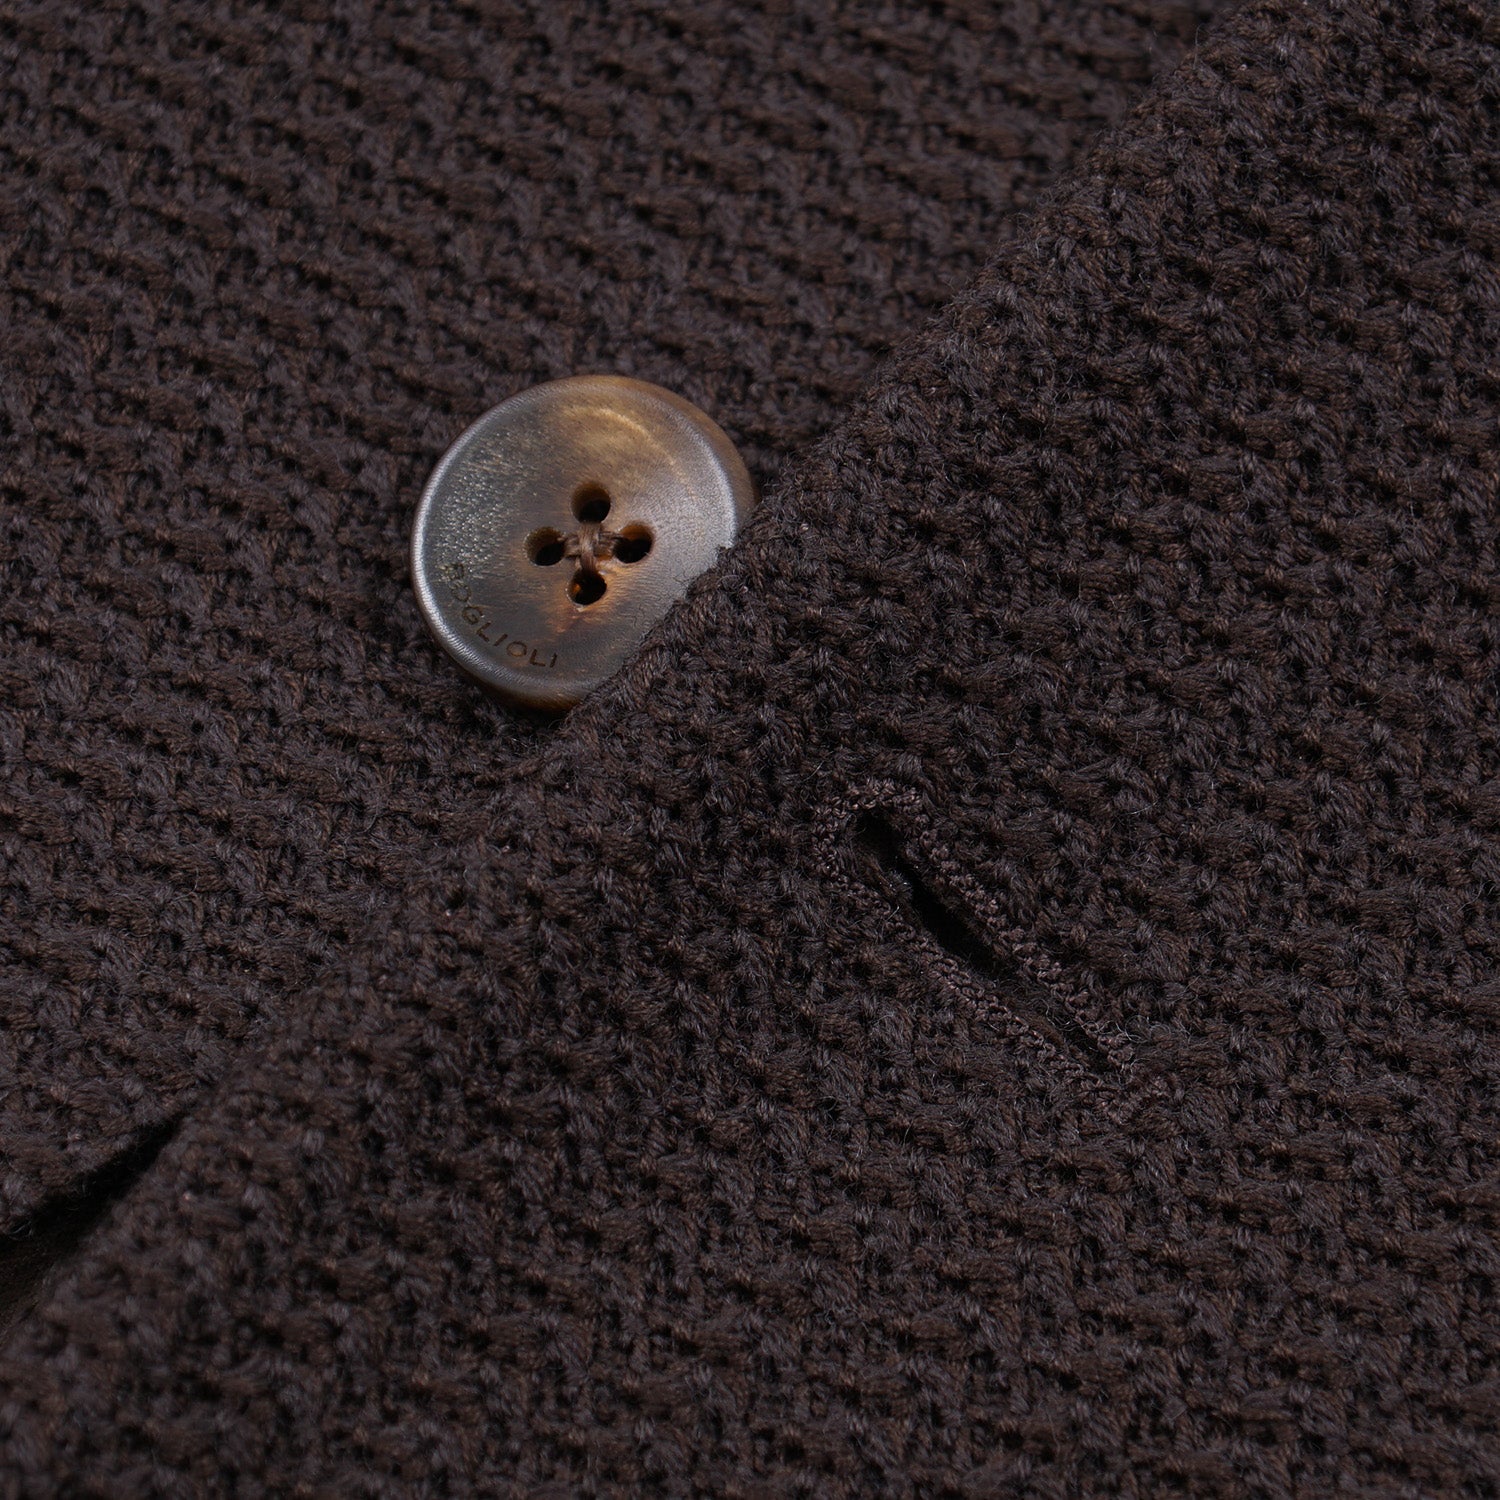 Boglioli Knit Wool-Cotton 'K Jacket' Sport Coat - Top Shelf Apparel